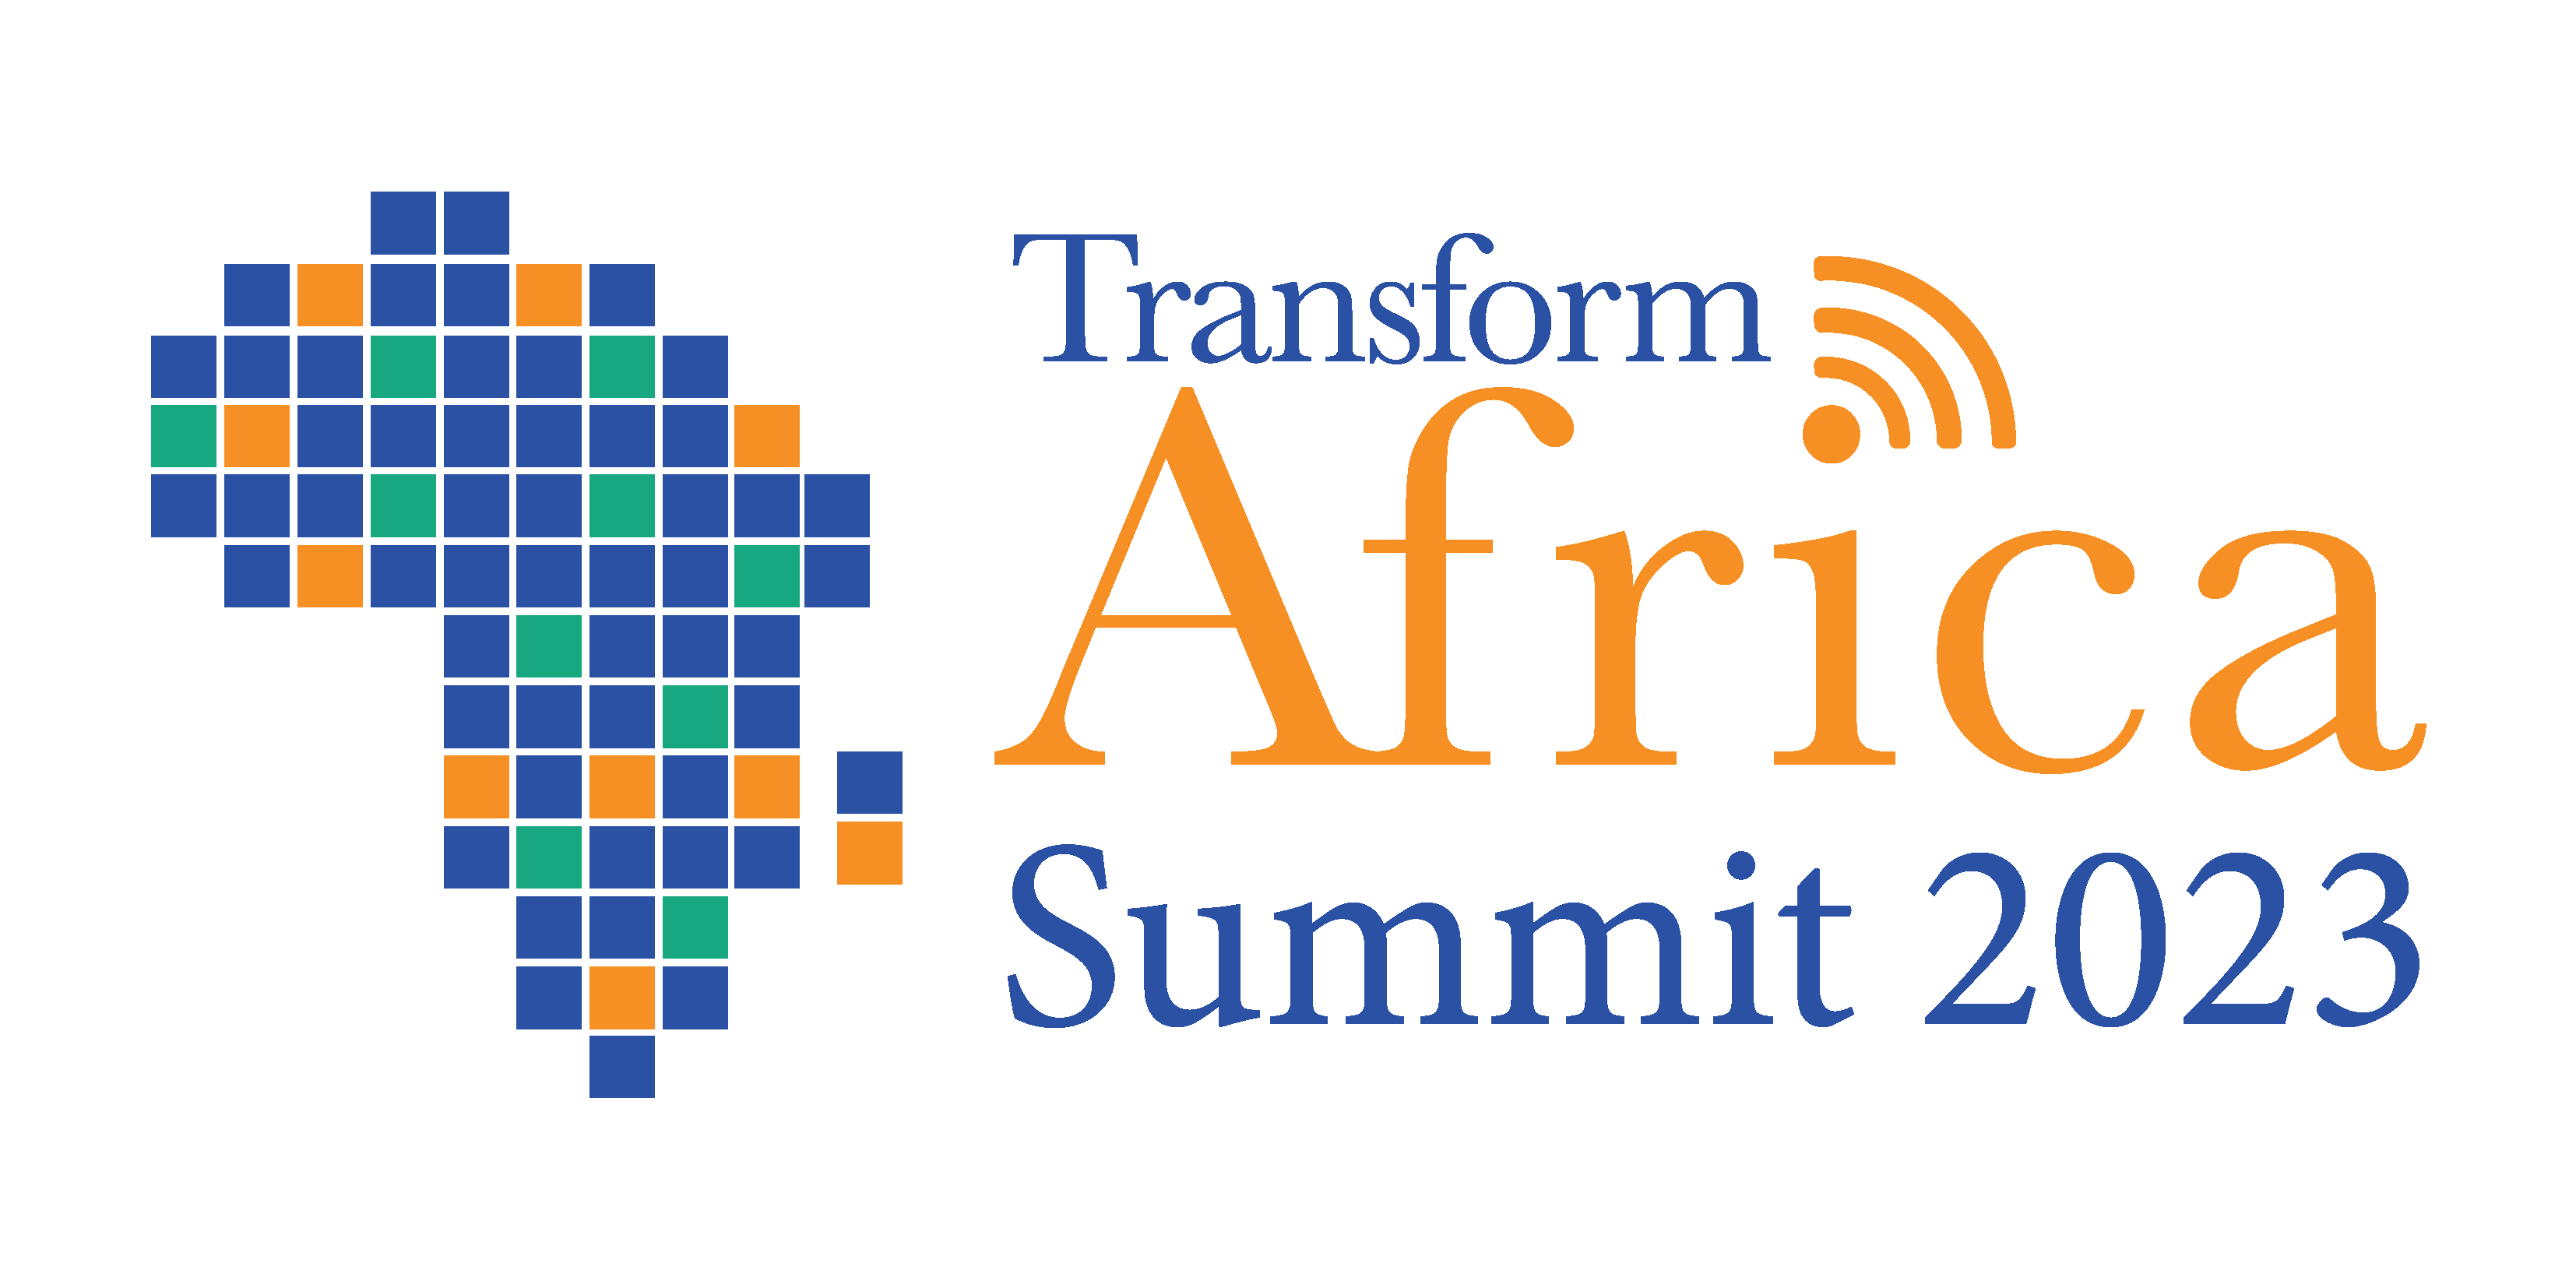 Transform Africa Summit (TAS)